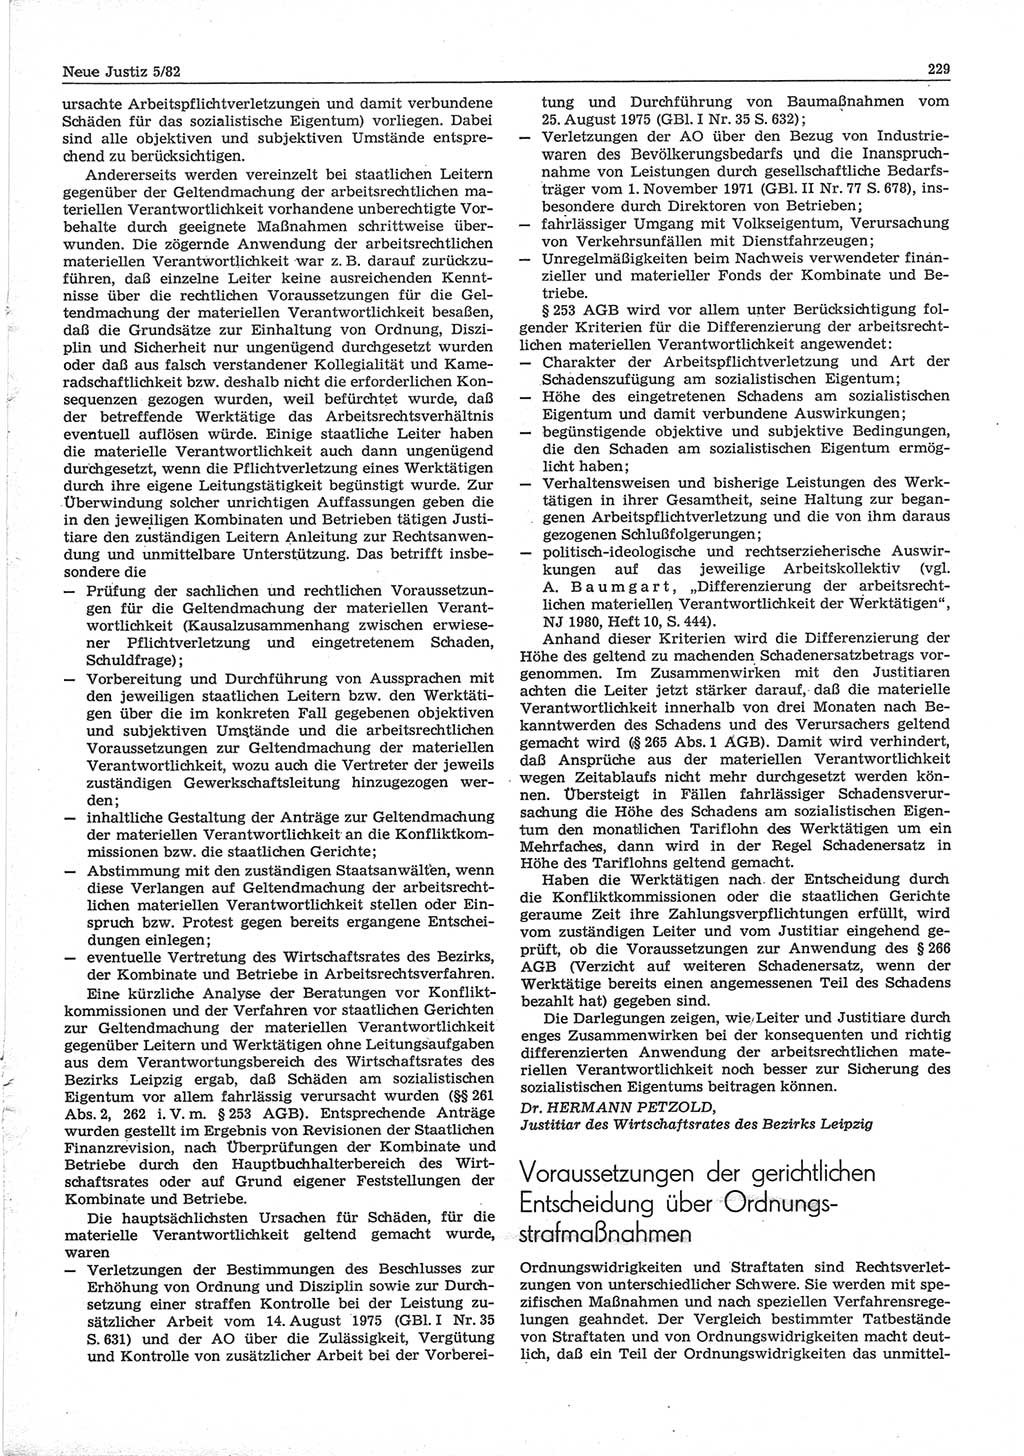 Neue Justiz (NJ), Zeitschrift für sozialistisches Recht und Gesetzlichkeit [Deutsche Demokratische Republik (DDR)], 36. Jahrgang 1982, Seite 229 (NJ DDR 1982, S. 229)